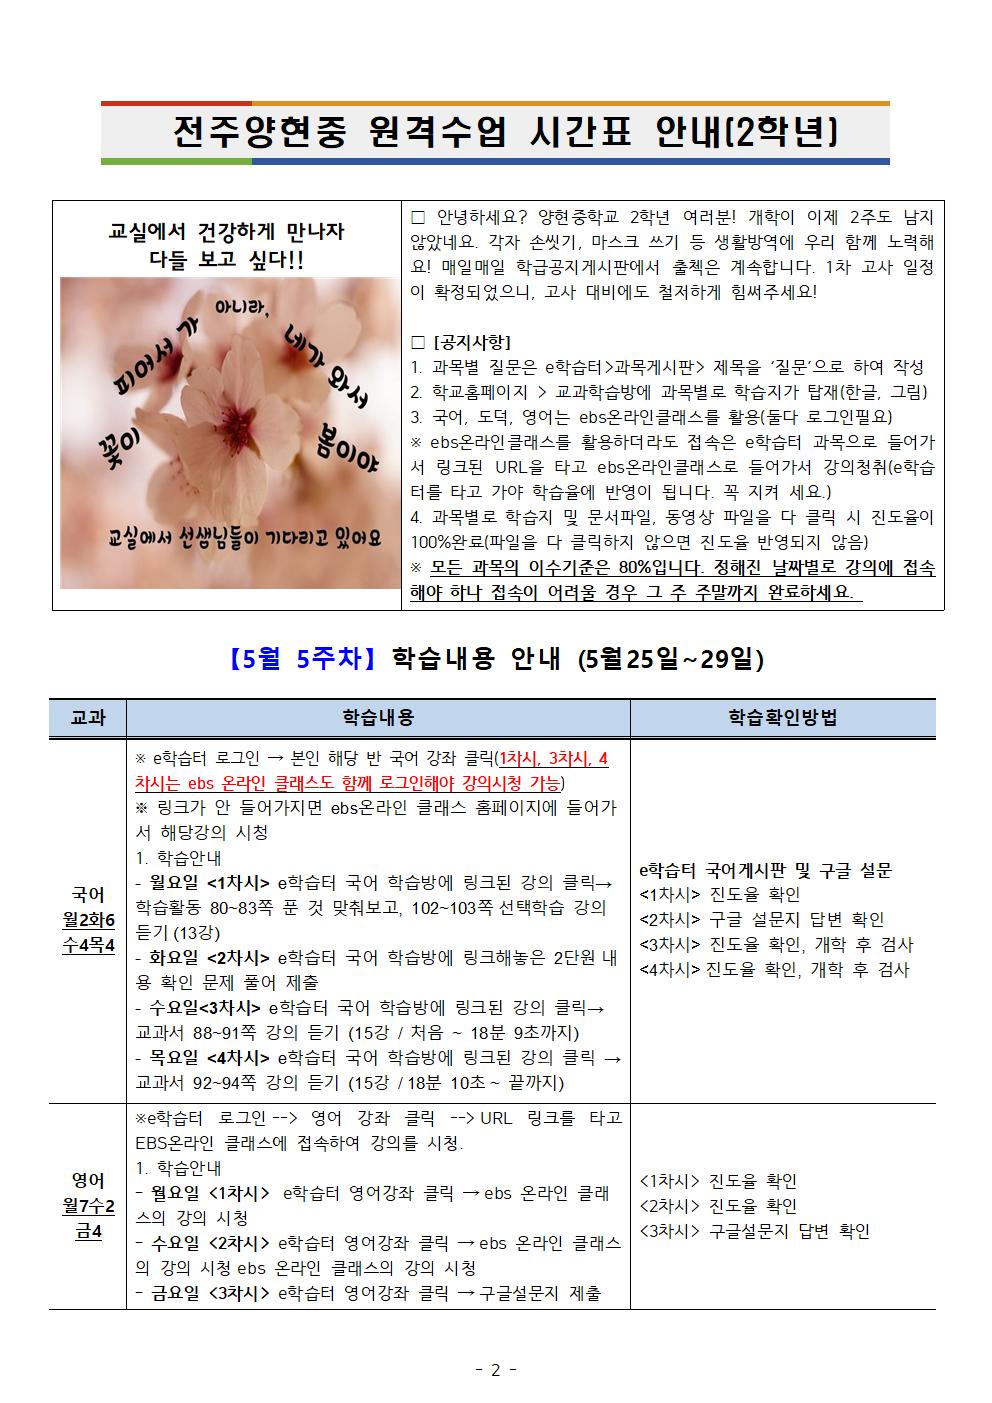 【5월5주차】2학년온라인학습내용 안내 탑재용(5.25-29)002